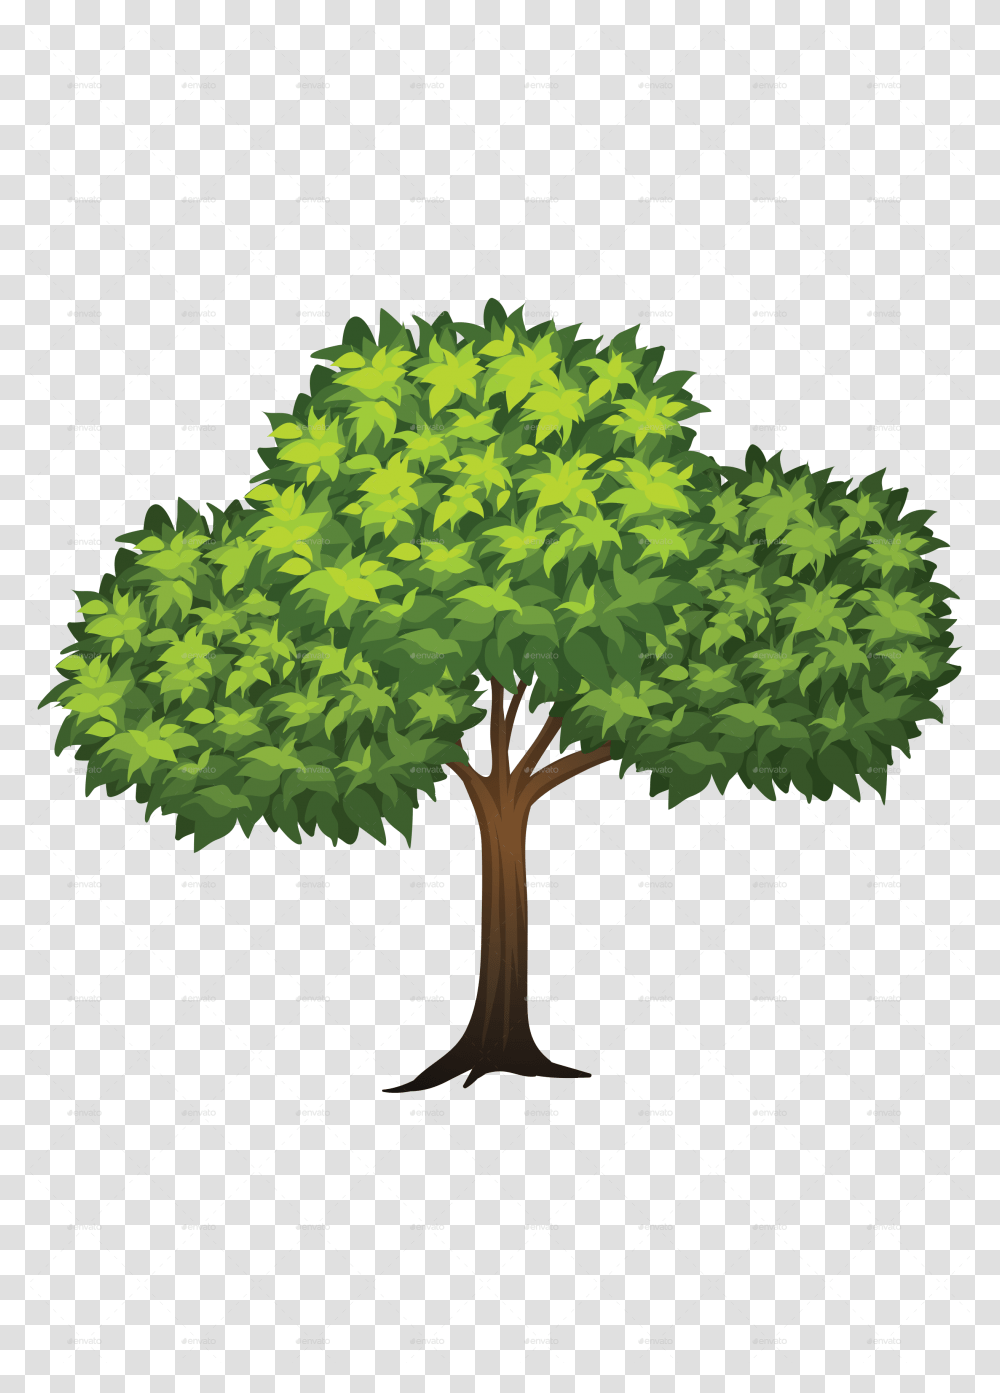 Trees Vectors Trees Jpg, Plant, Cross, Symbol, Leaf Transparent Png